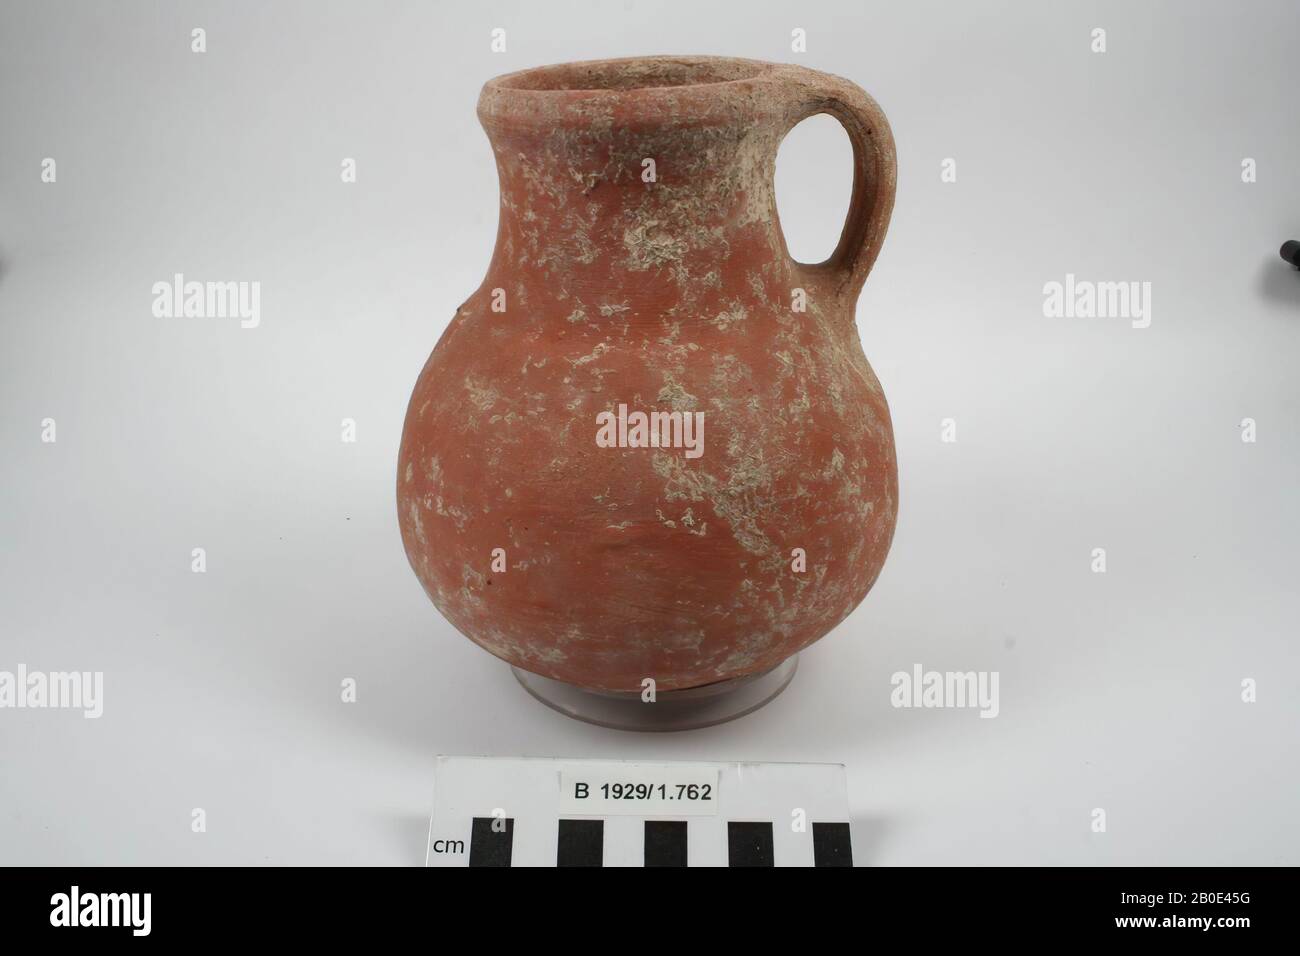 Una brocca di terracotta o una lattina con un orecchio e un collo abbastanza largo., beffa, ceramica, H 16,5 cm, D pancia 14 cm, D bordo 8,1 cm, Bronze Age, Iron Age 2000-539 a.C., Israele Foto Stock